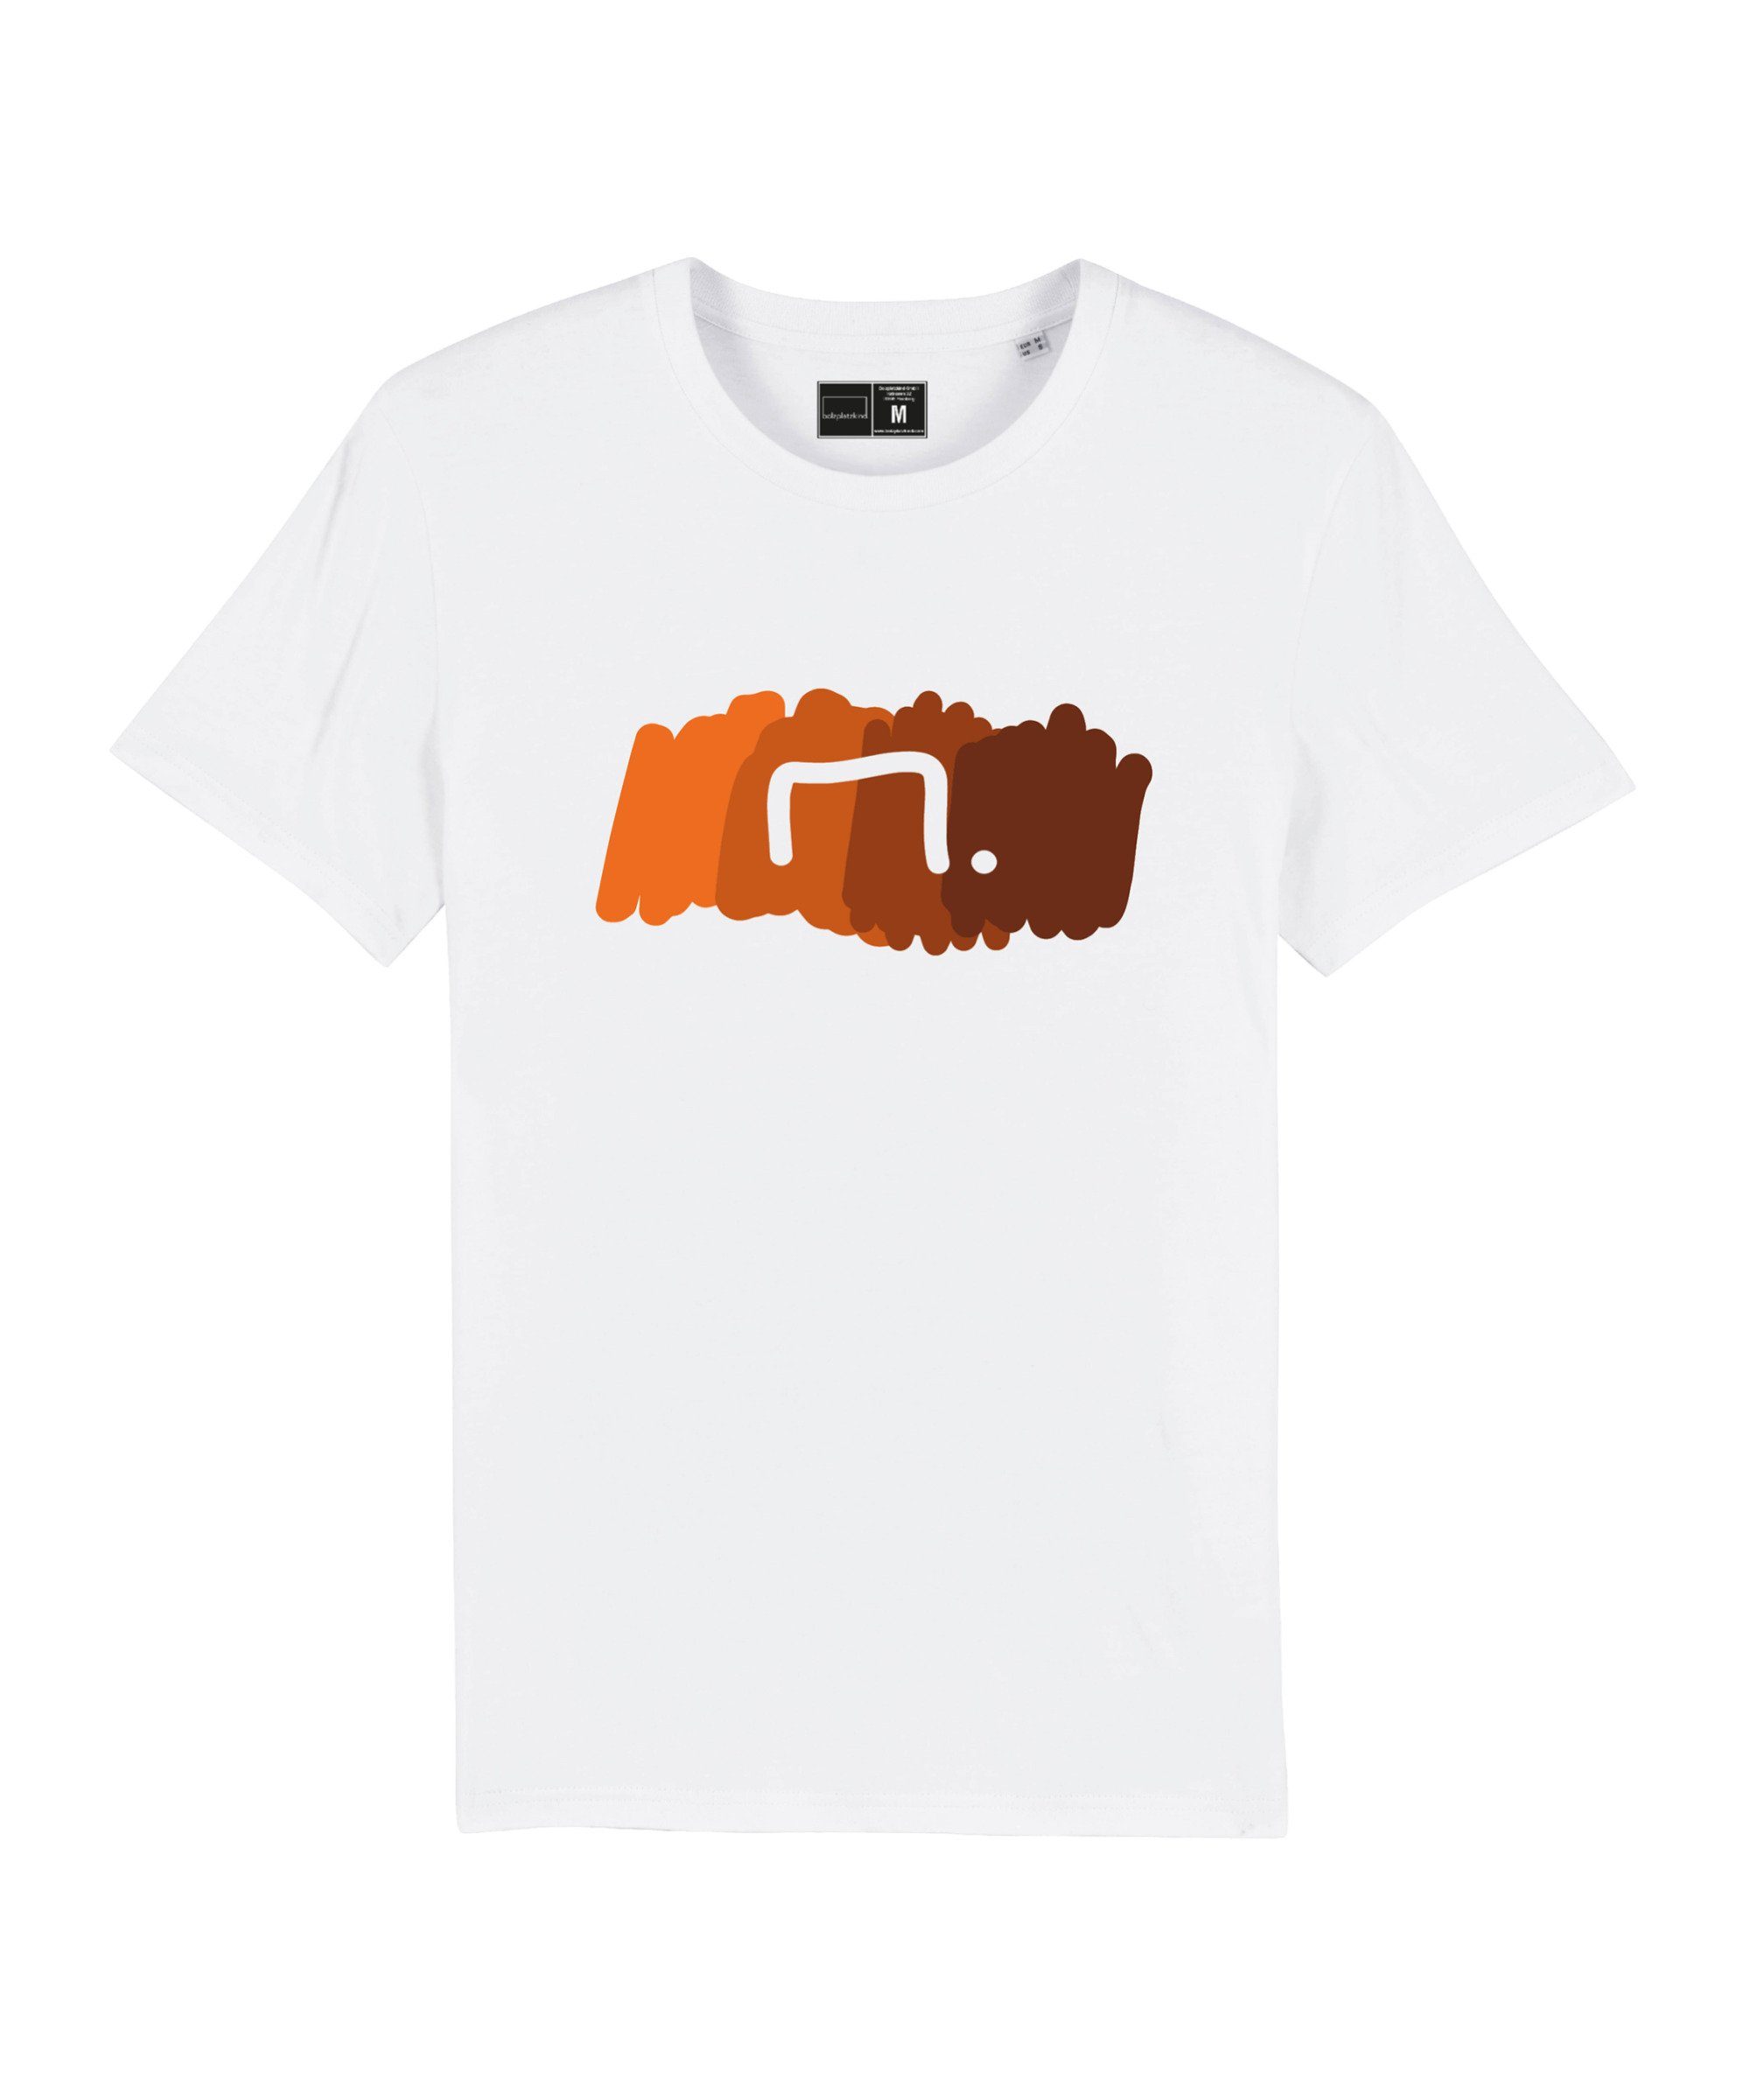 Bolzplatzkind T-Shirt "Free" T-Shirt Nachhaltiges Produkt weissorange